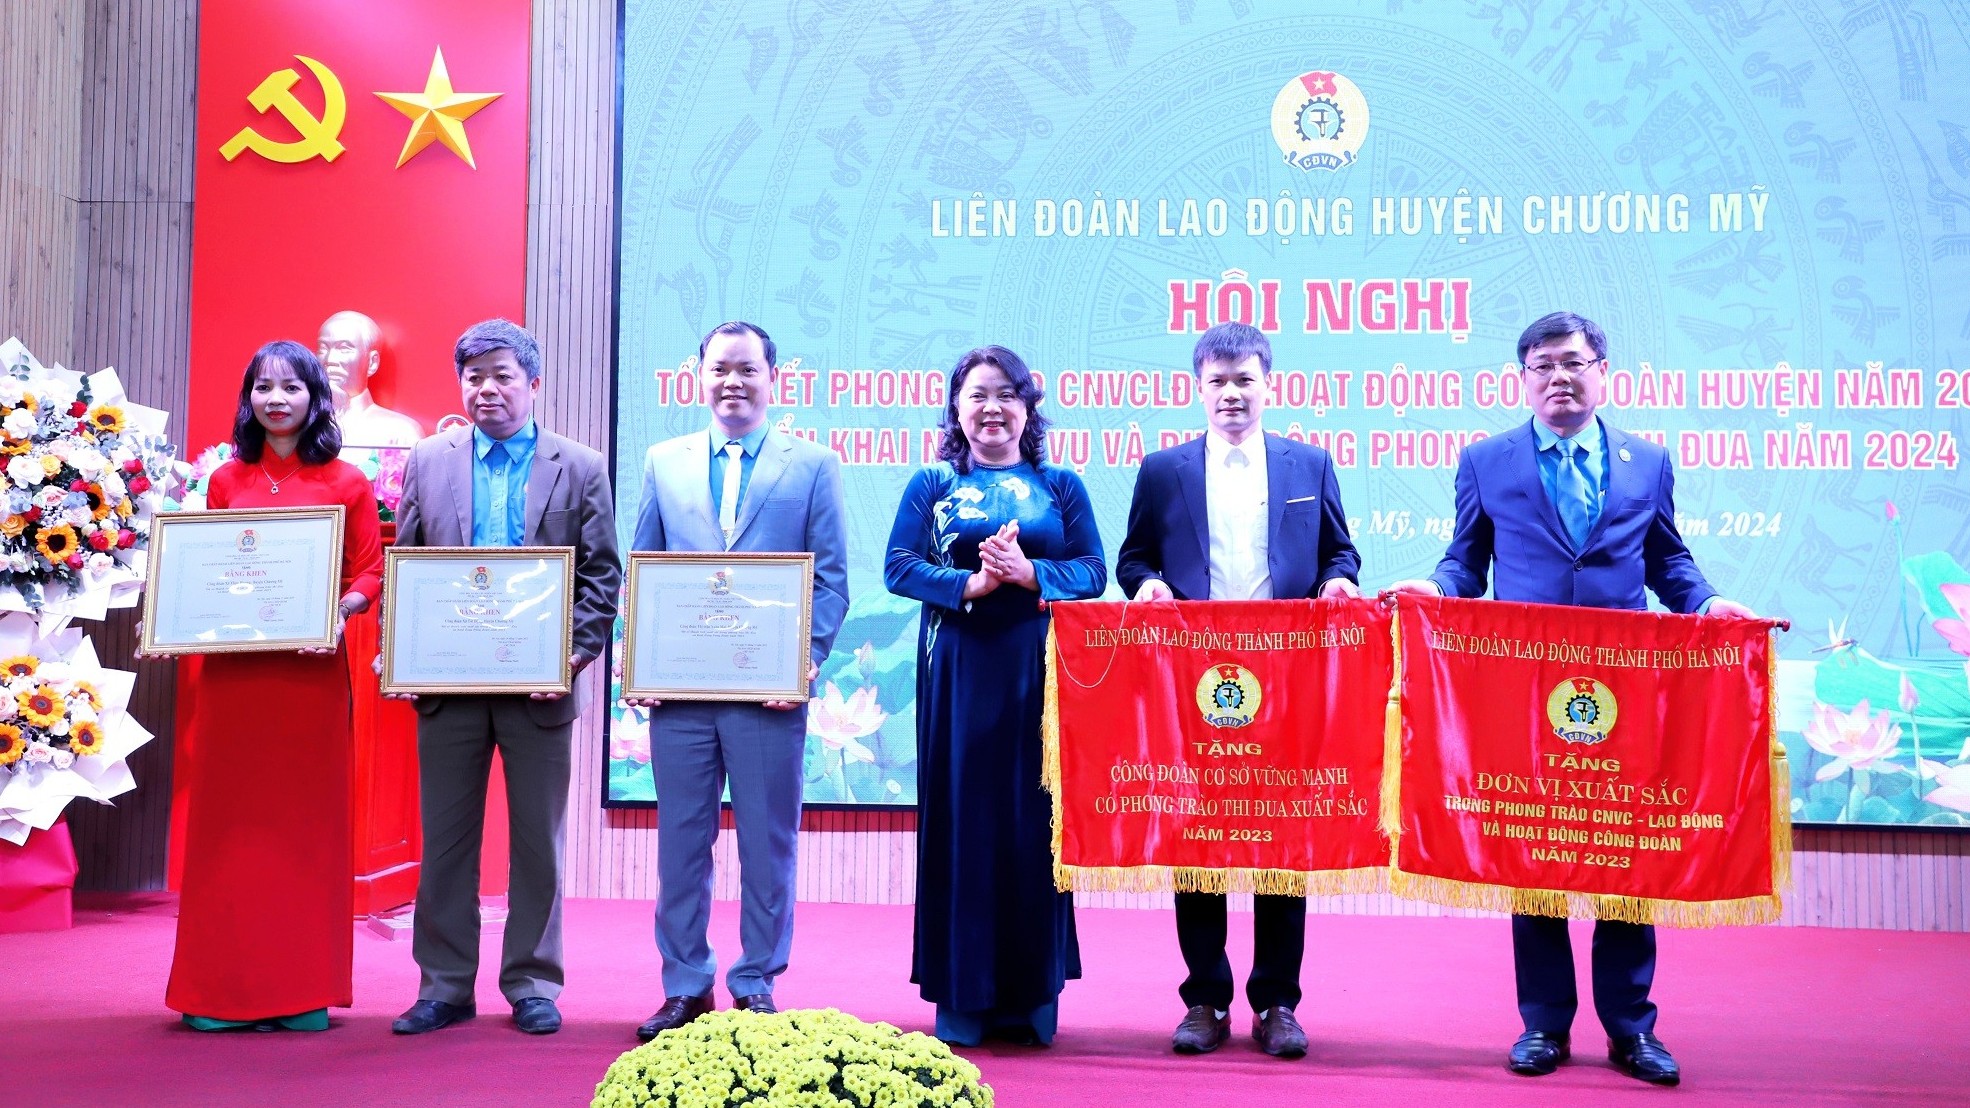 LĐLĐ huyện Chương Mỹ đón nhận Cờ thi đua của LĐLĐ thành phố Hà Nội